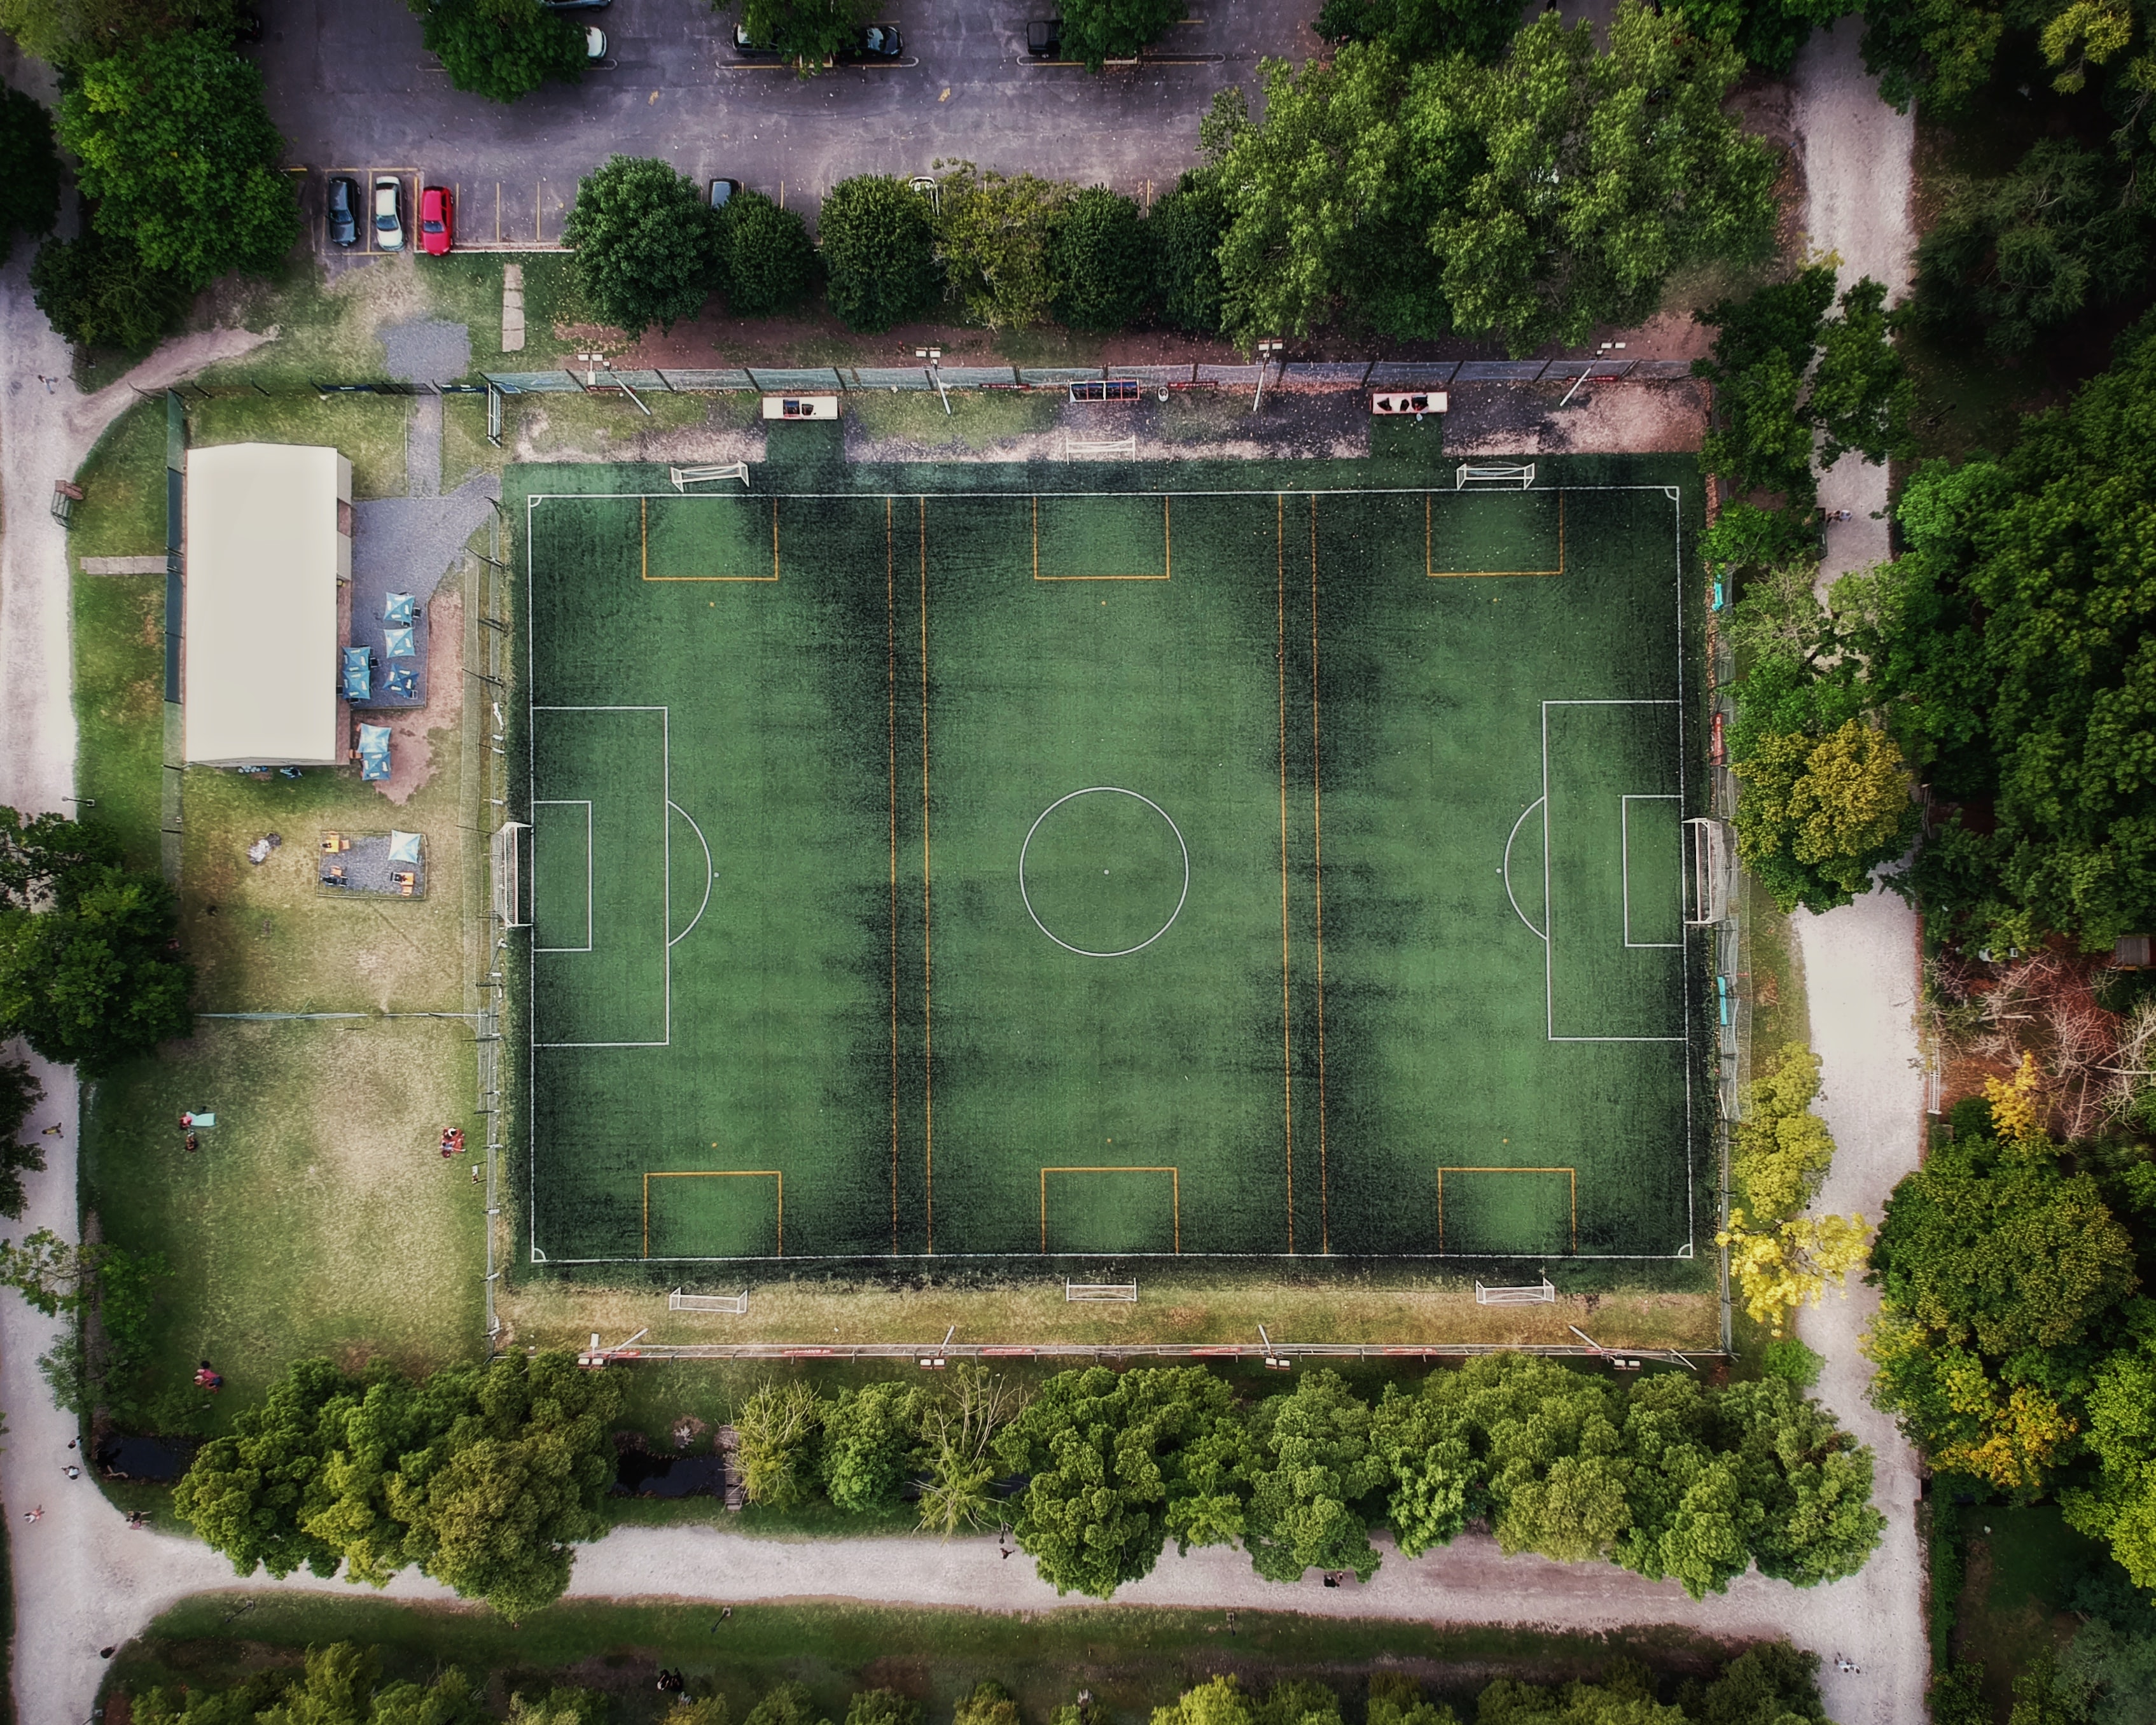 Descargar las imágenes de Campo De Fútbol gratis para teléfonos Android y  iPhone, fondos de pantalla de Campo De Fútbol para teléfonos móviles